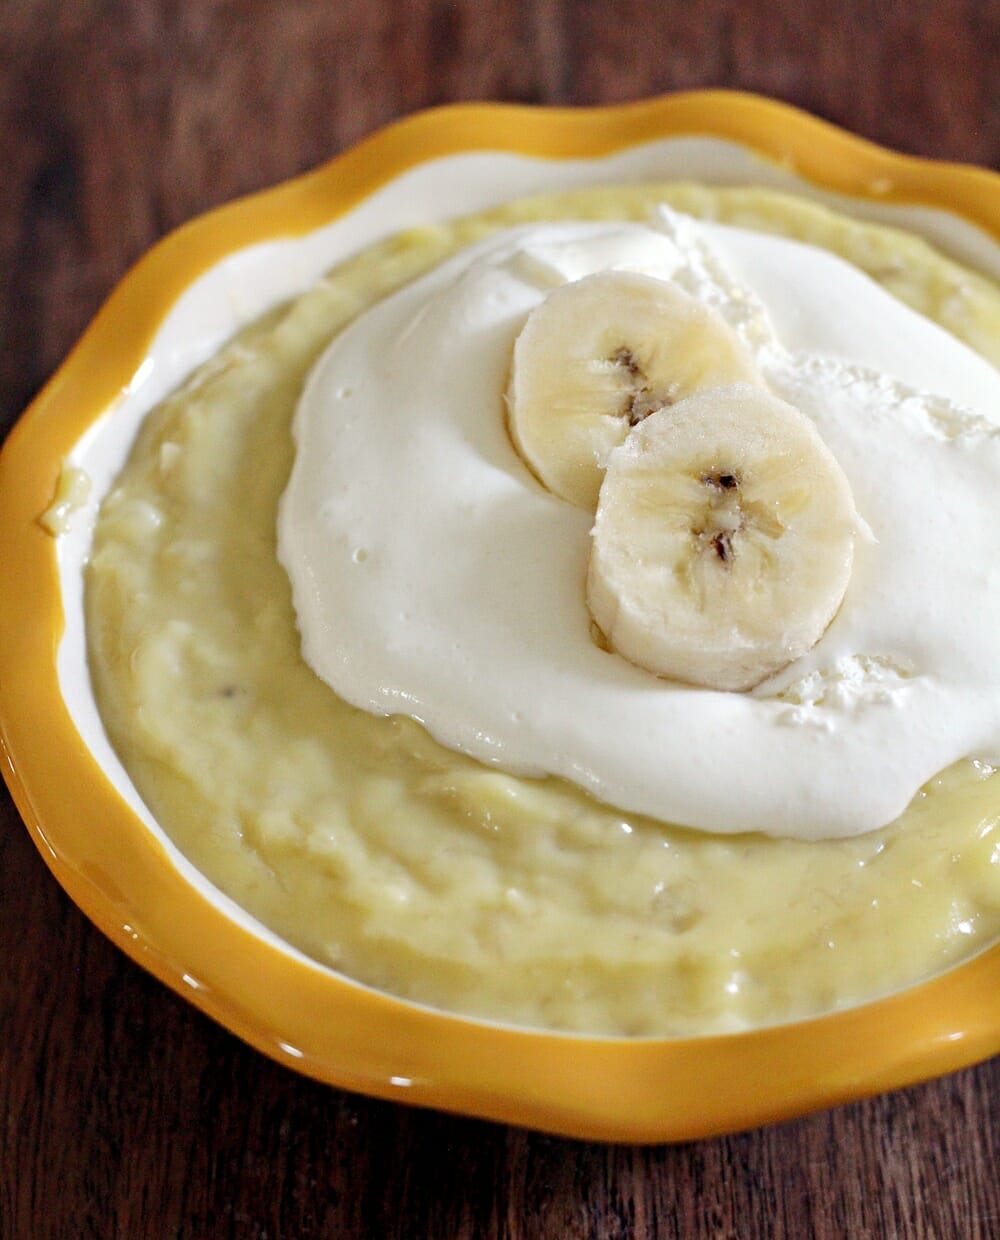 Incredible Homemade Banana Pudding